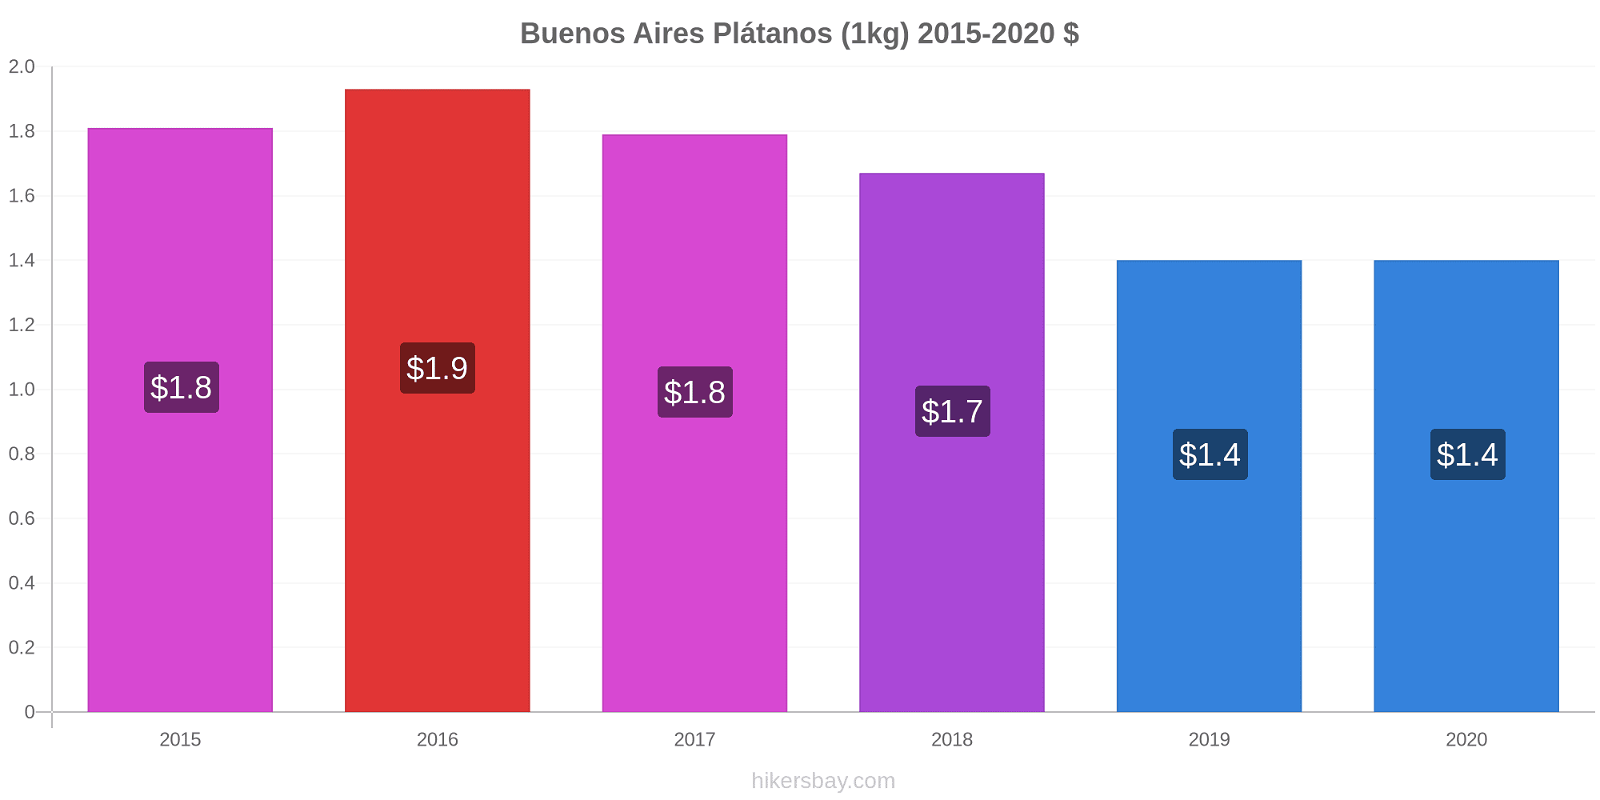 Buenos Aires cambios de precios Plátano (1kg) hikersbay.com